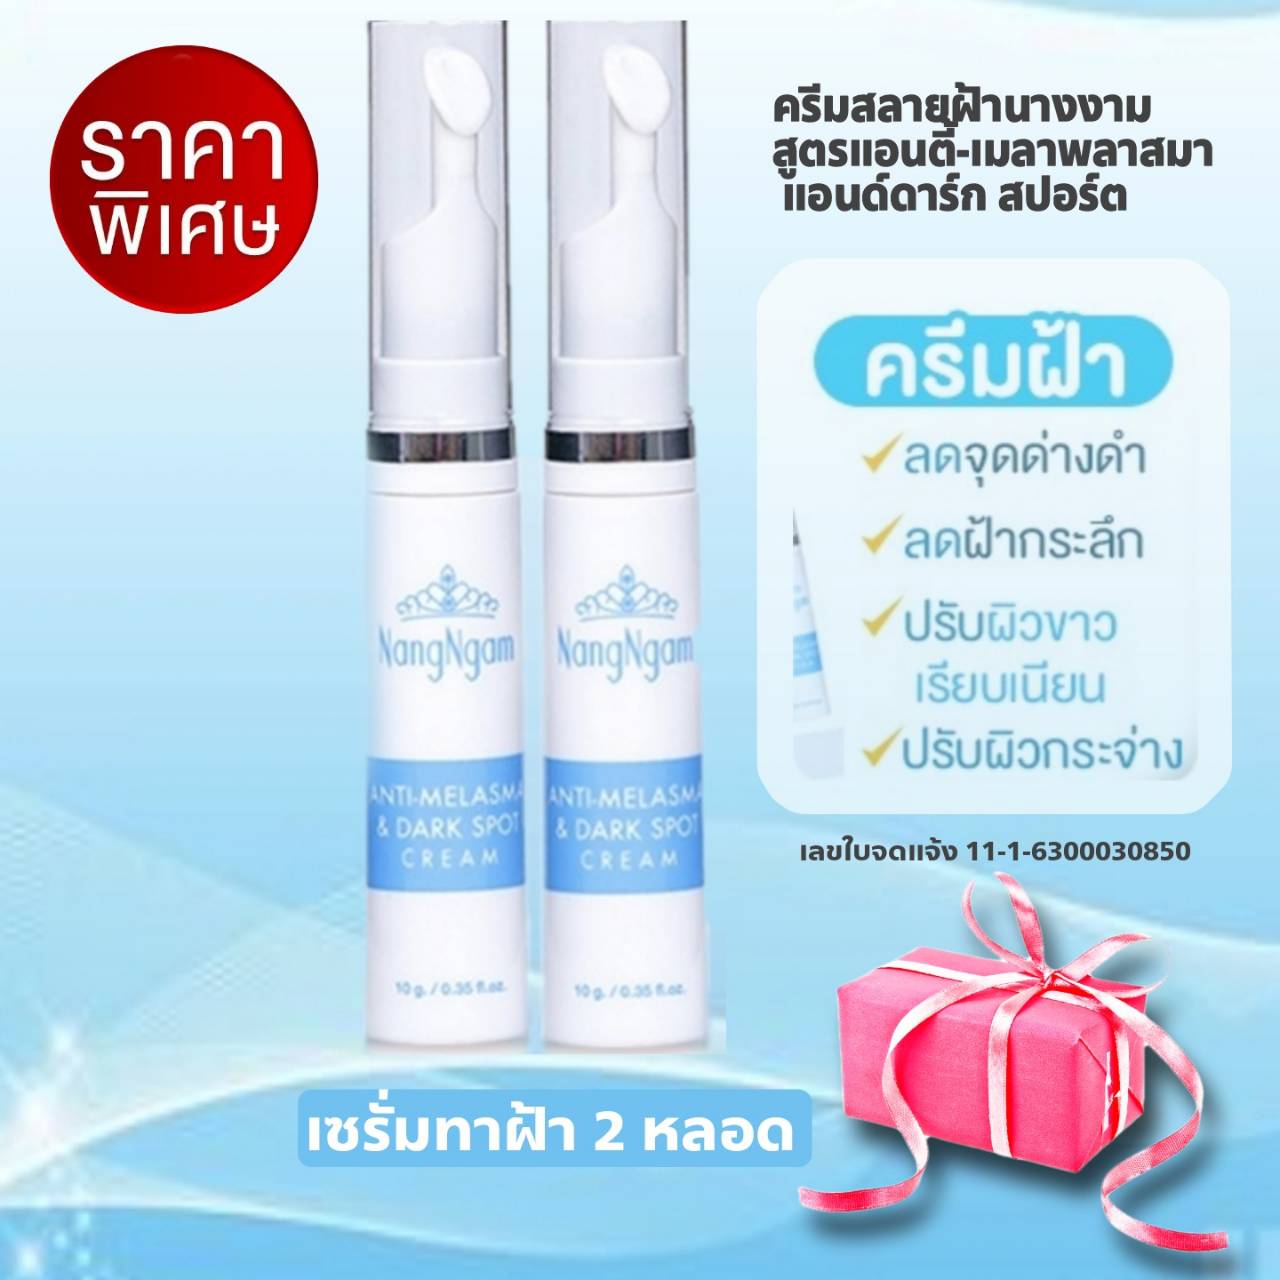 รีวิว ครีมสลายฝ้า Nangngam Anti-Melasma & Dark Spot Cream2 หลอด ราคาพิเศษ